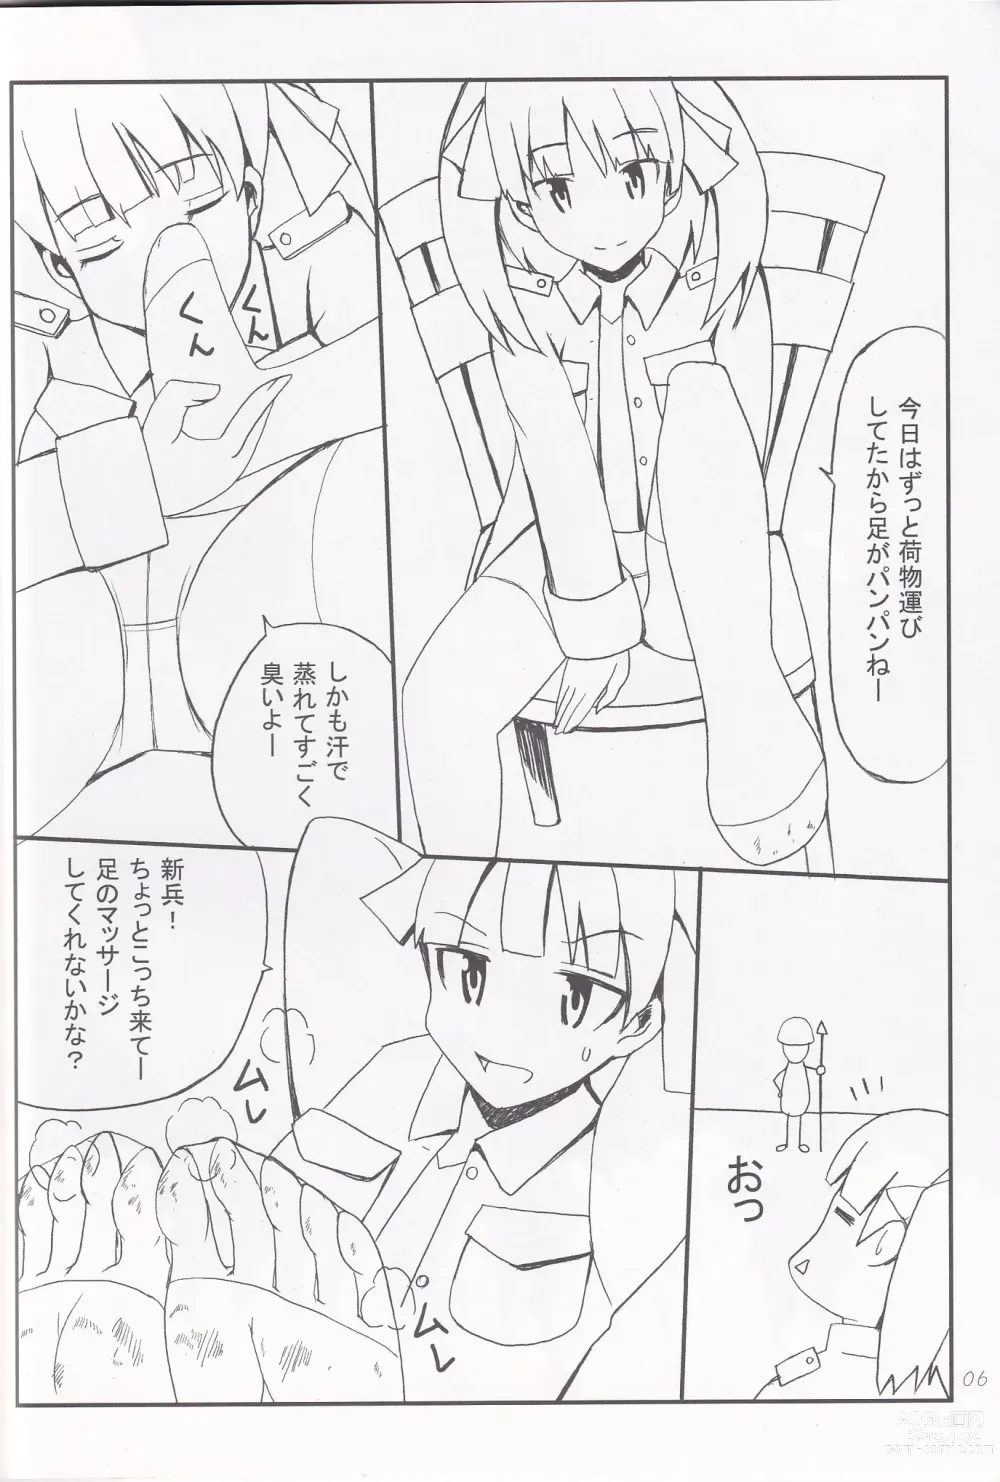 Page 5 of doujinshi Ashi no Ura